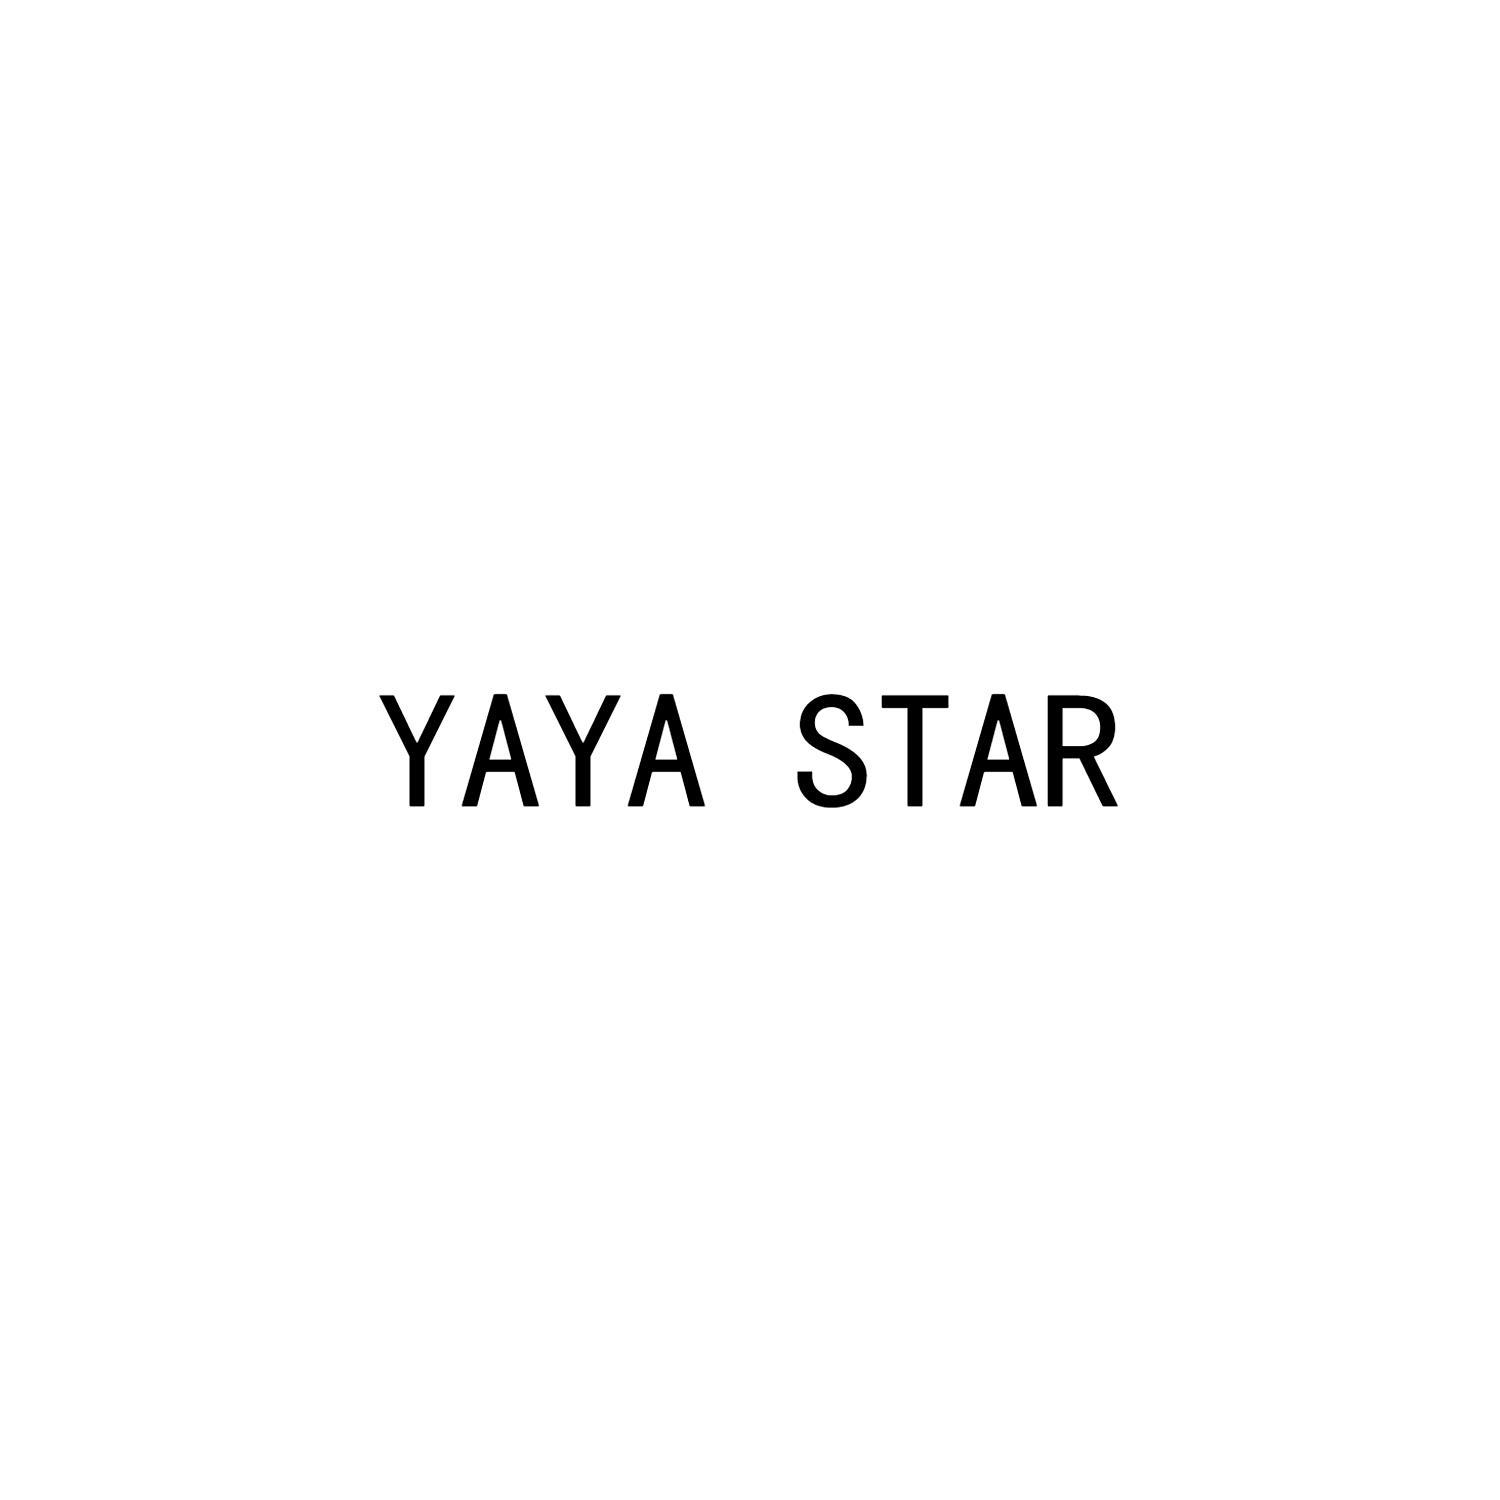 YAYA STAR